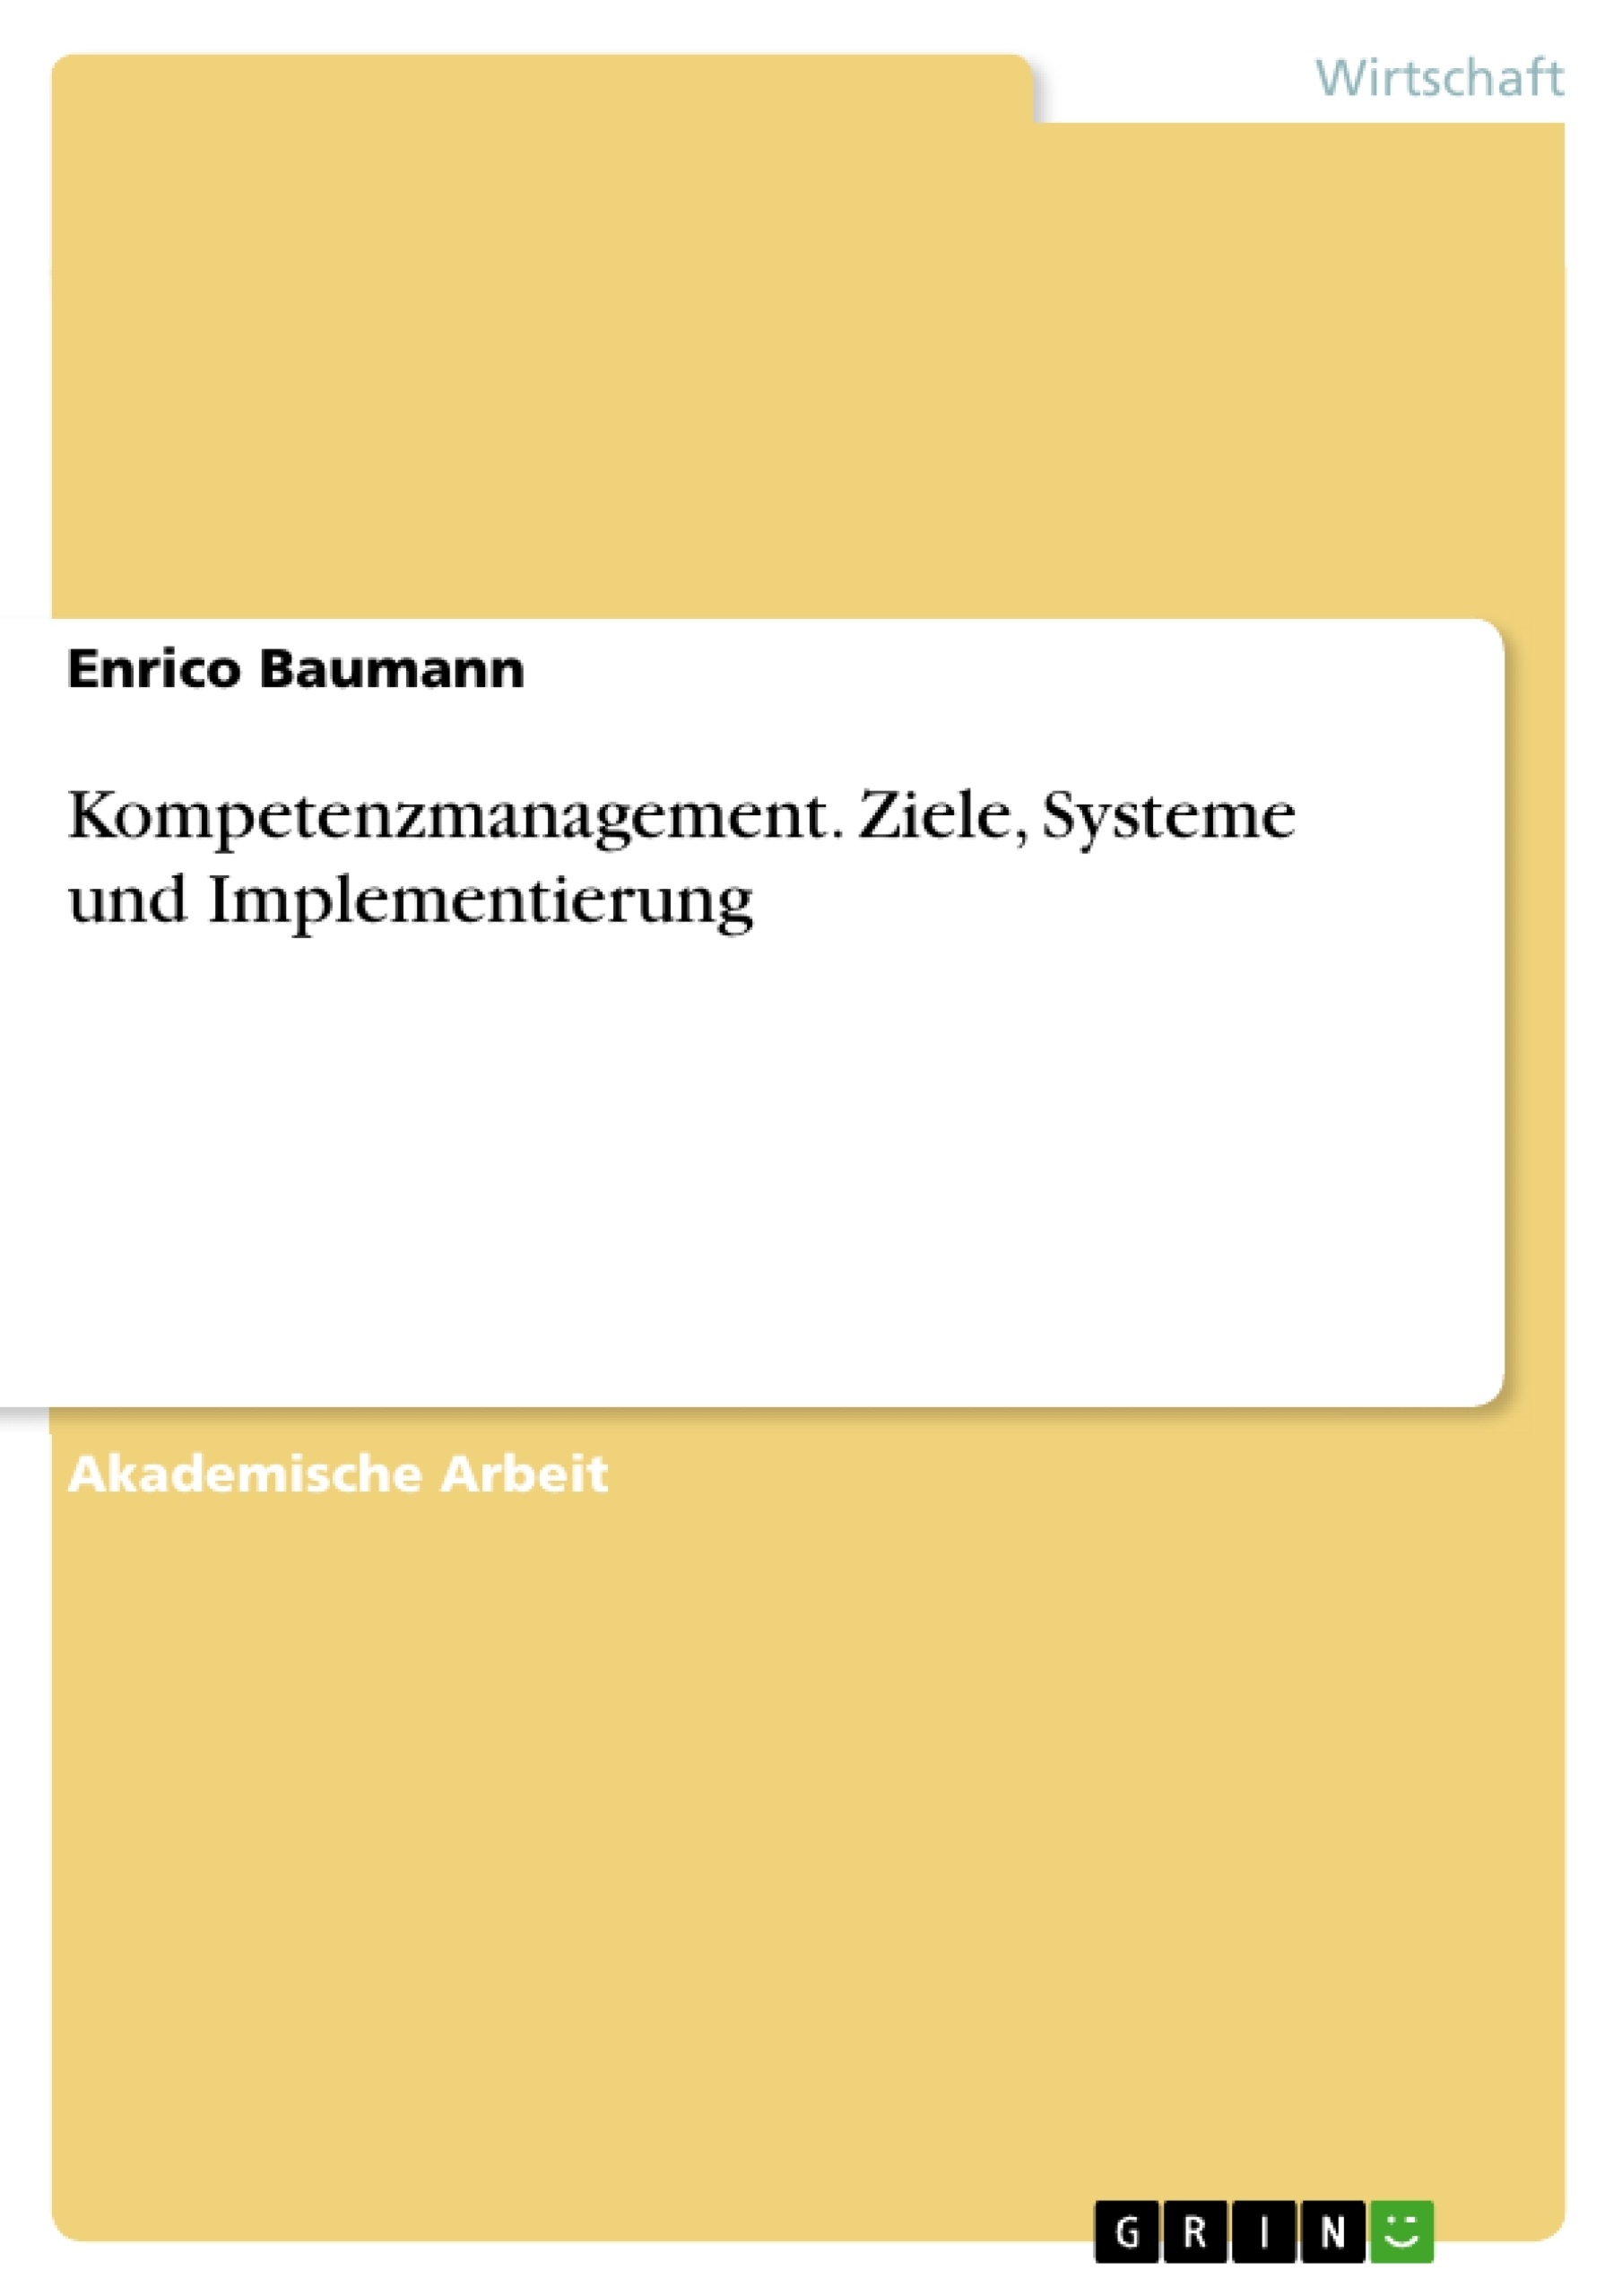 Título: Kompetenzmanagement. Ziele, Systeme und Implementierung